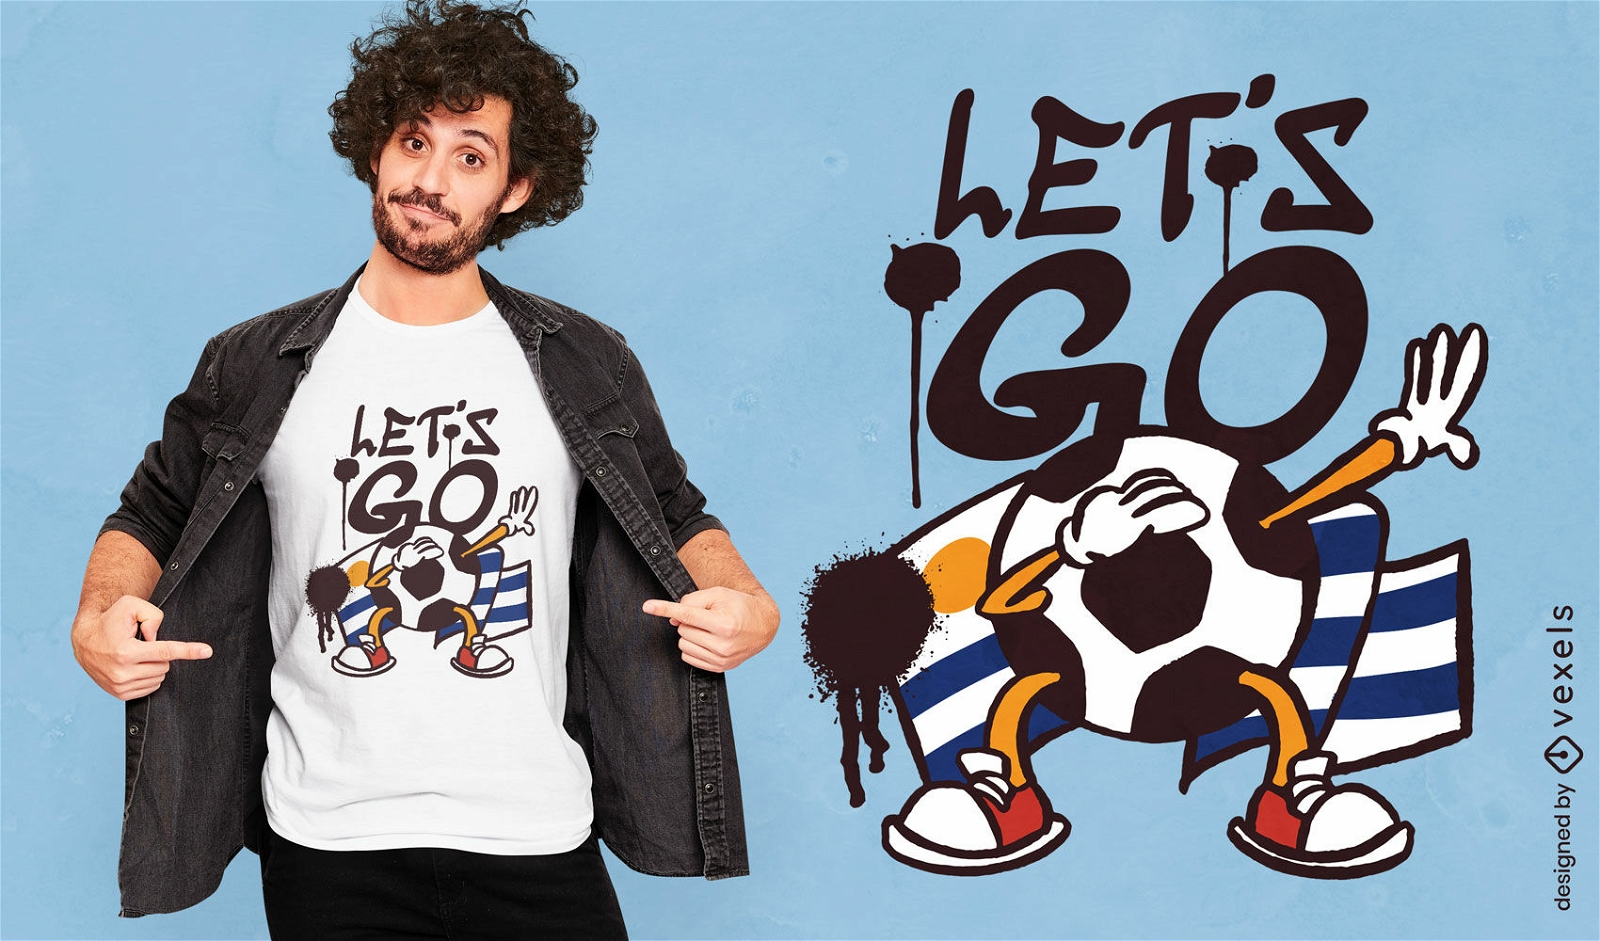 Football and uruguayan flag t-shirt design